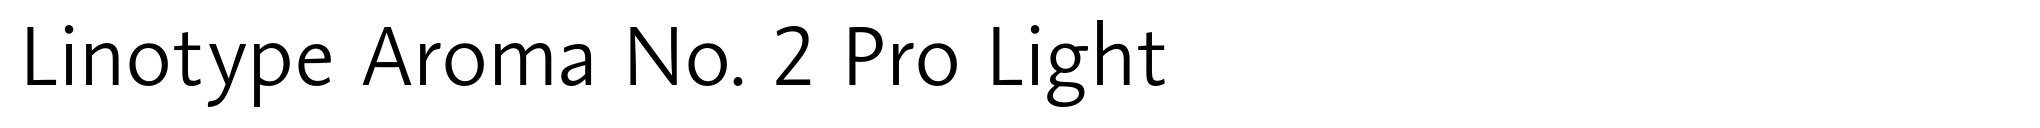 Linotype Aroma No. 2 Pro Light image